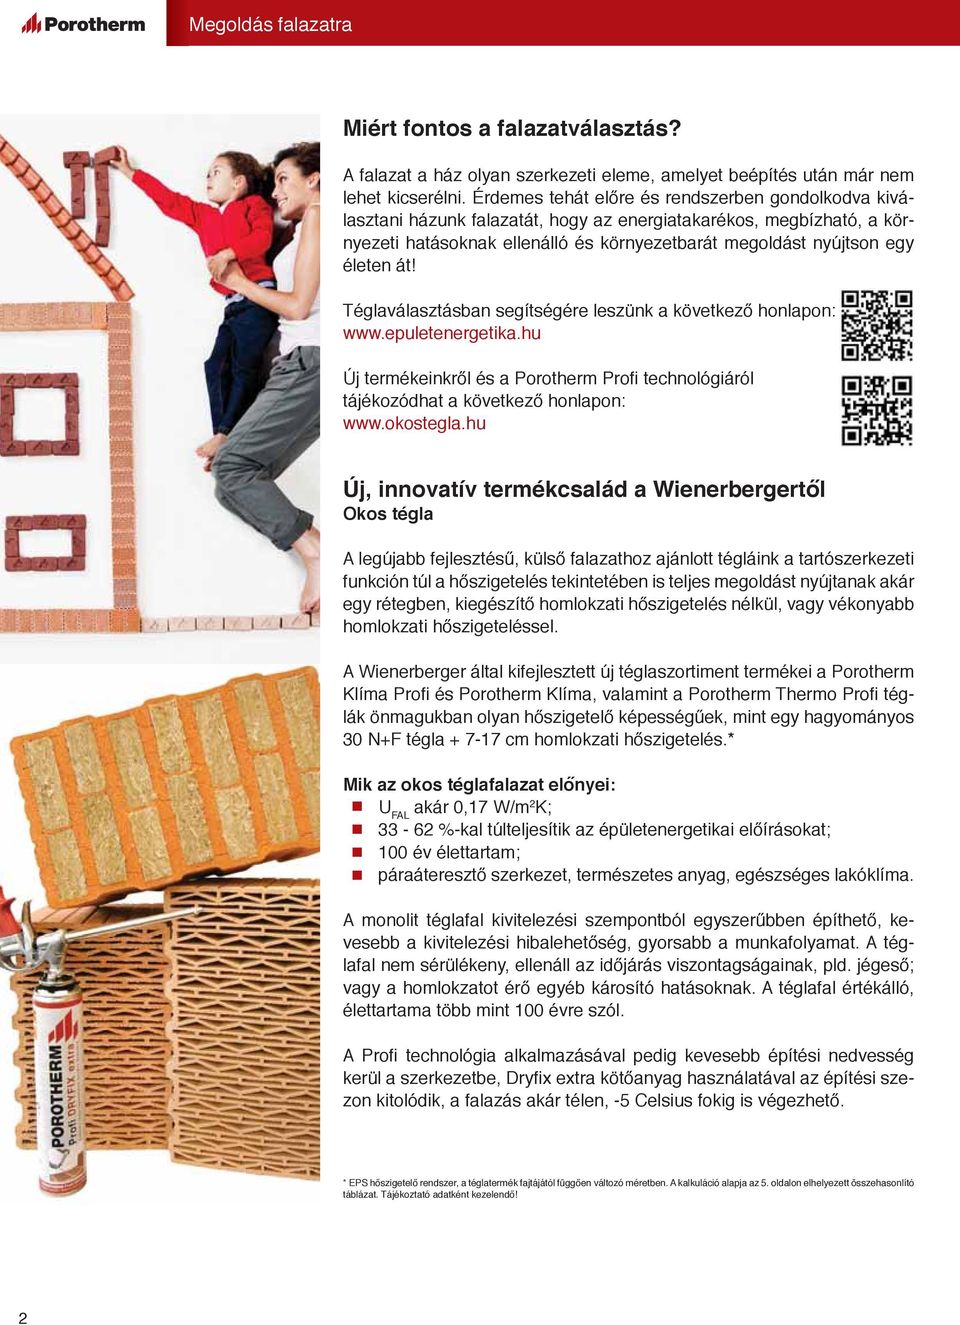 át! Téglaválasztásban segítségére leszünk a következő honlapon: www.epuletenergetika.hu Új termékeinkről és a Porotherm Profi technológiól tájékozódhat a következő honlapon: www.okostegla.